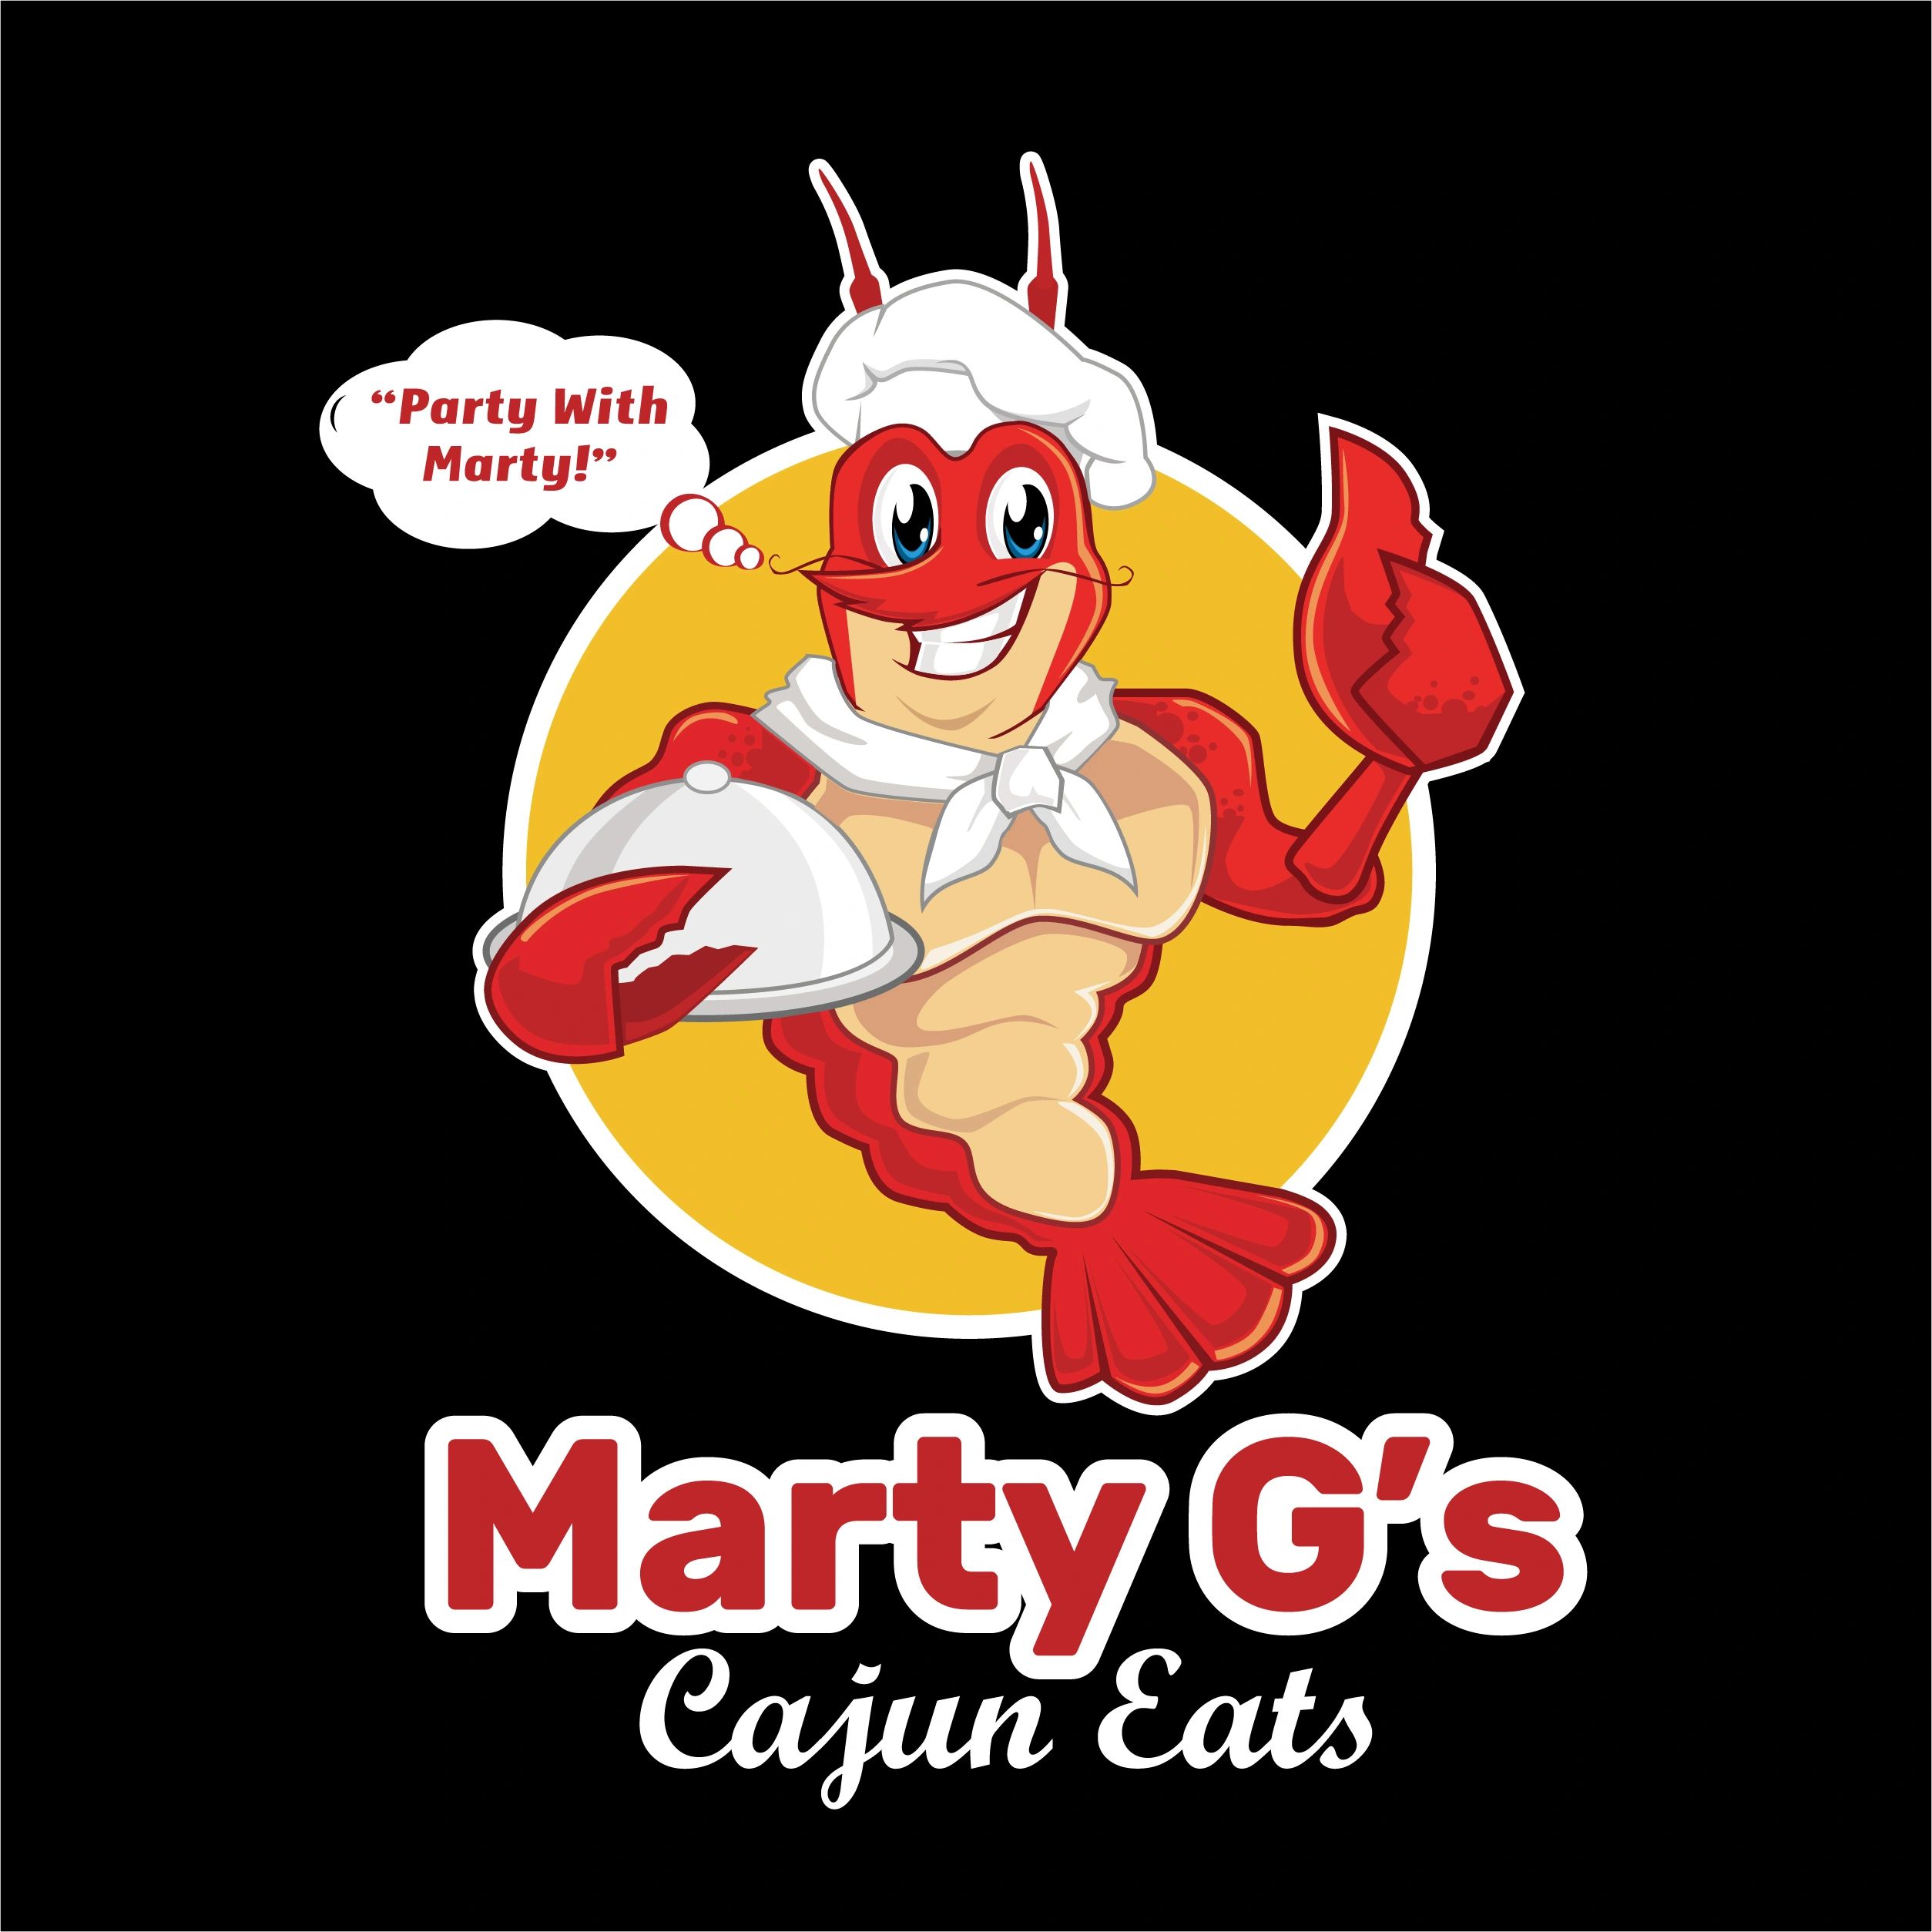 Crawfish logo